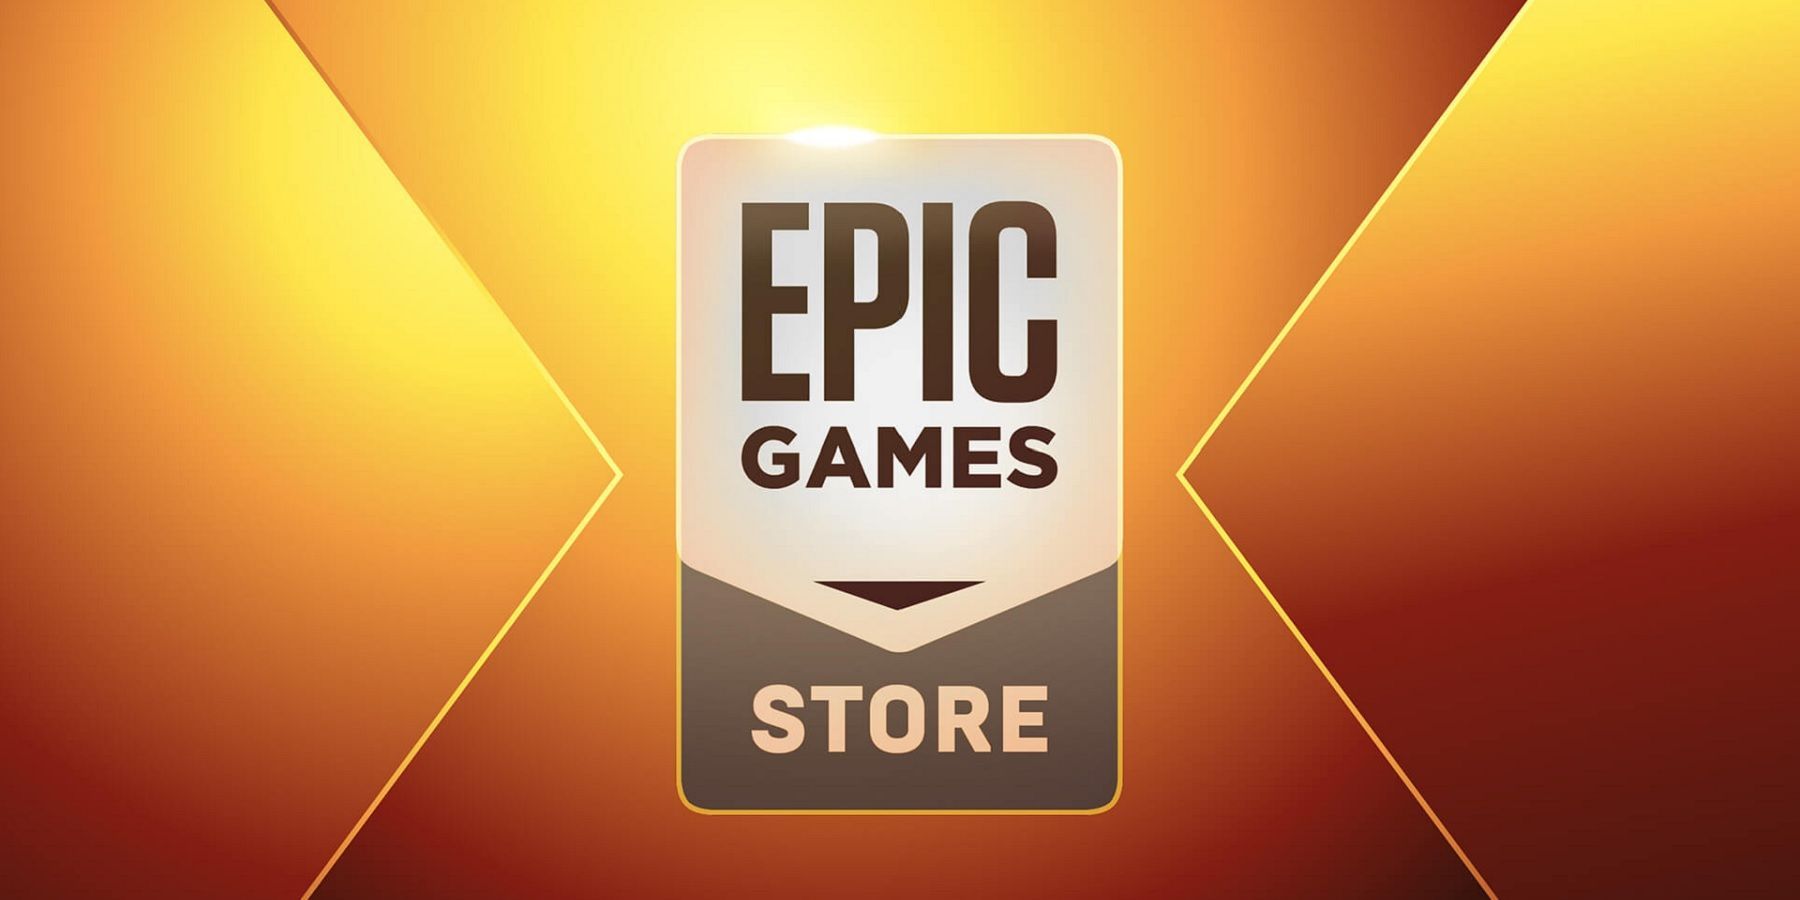 شرح مباراتين مجانيتين في متجر Epic Games في 15 سبتمبر